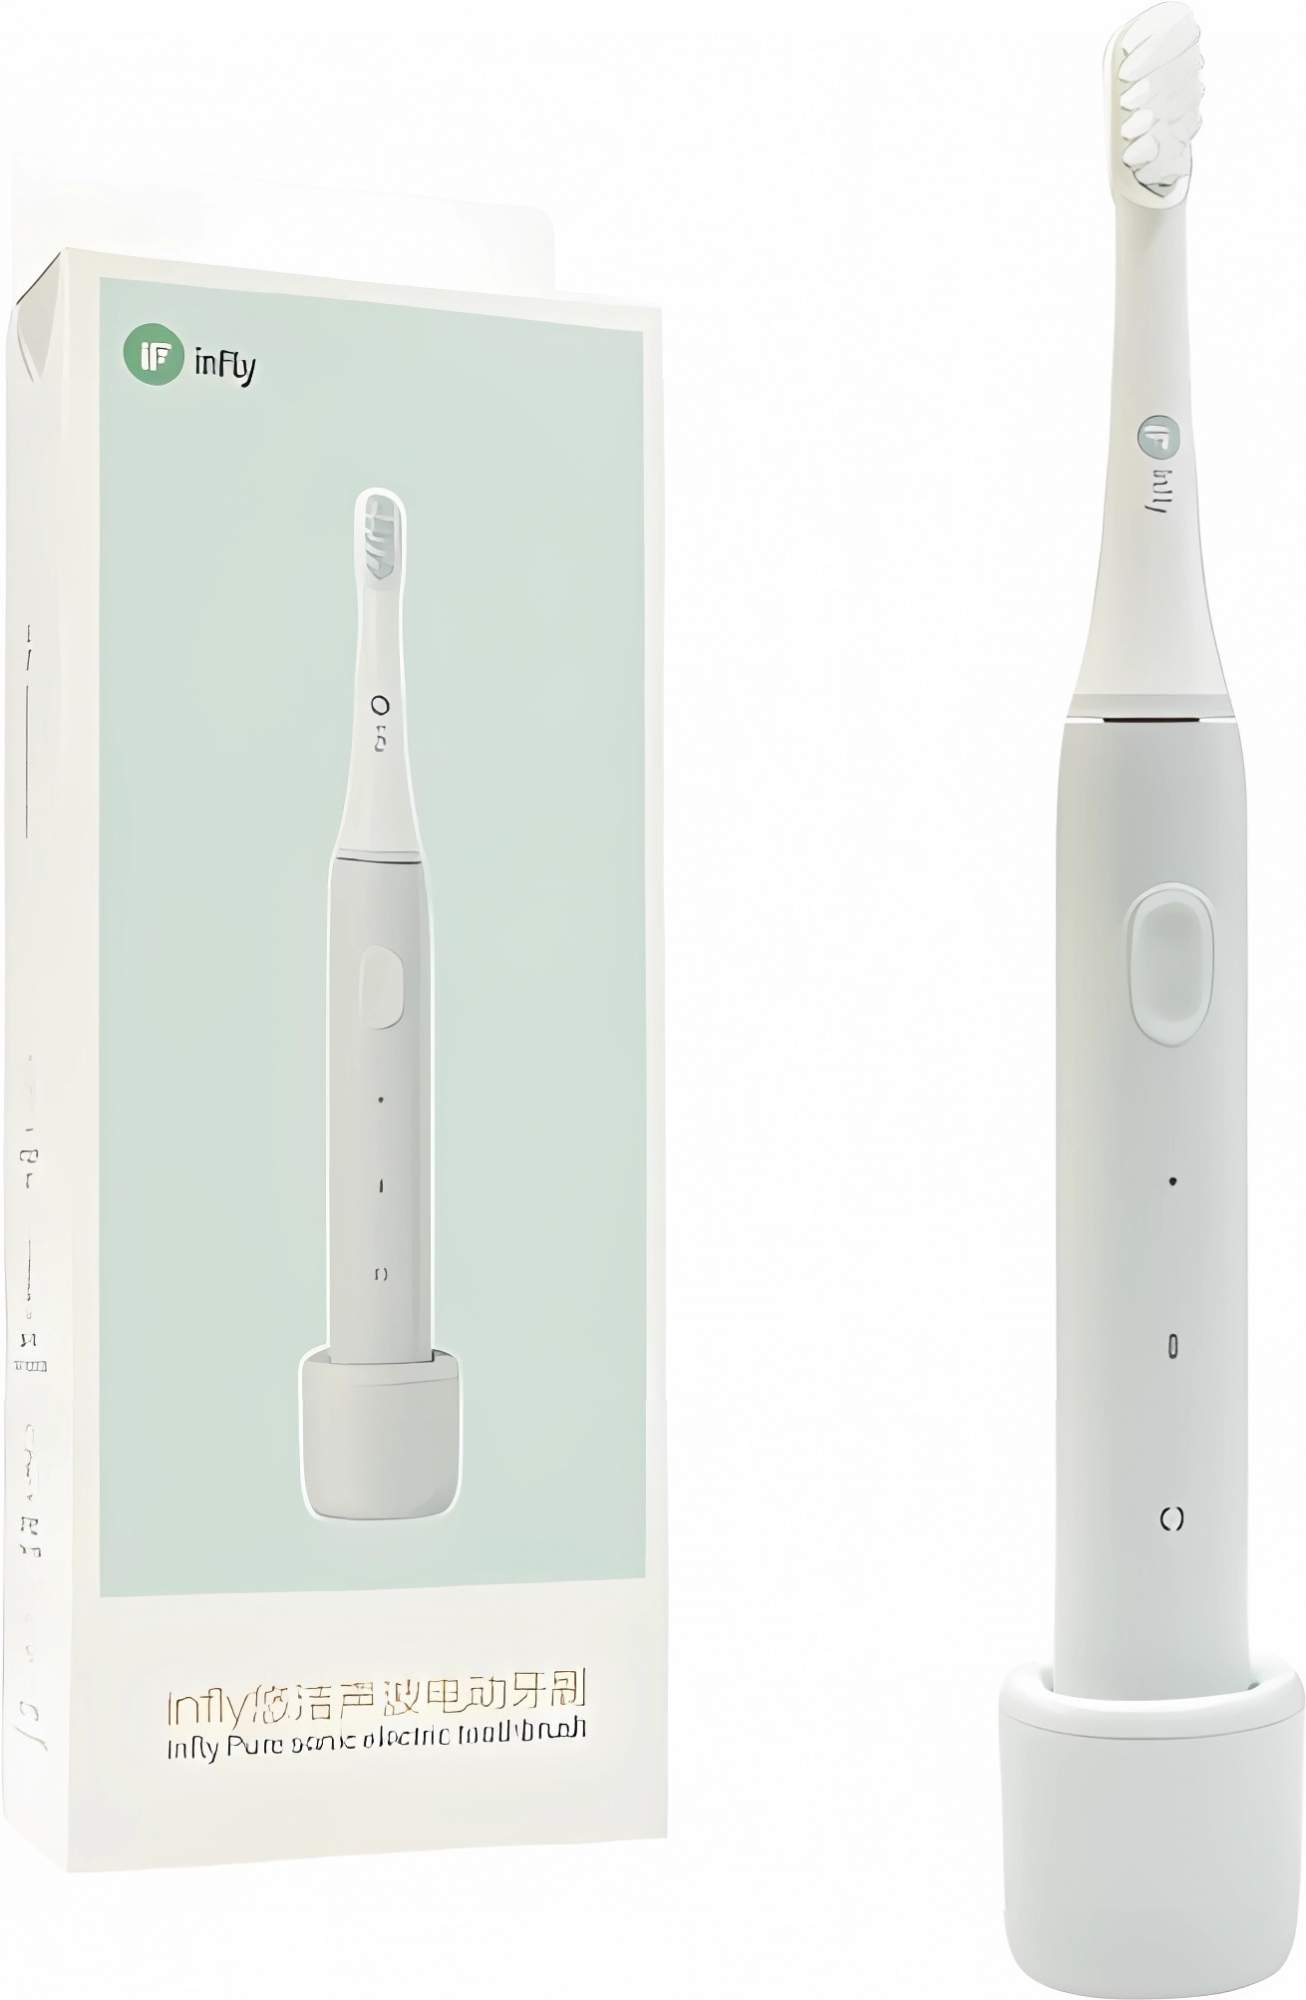 Электрическая зубная щетка Infly Electric Toothbrush P60 серый, купить в Москве, цены в интернет-магазинах на Мегамаркет